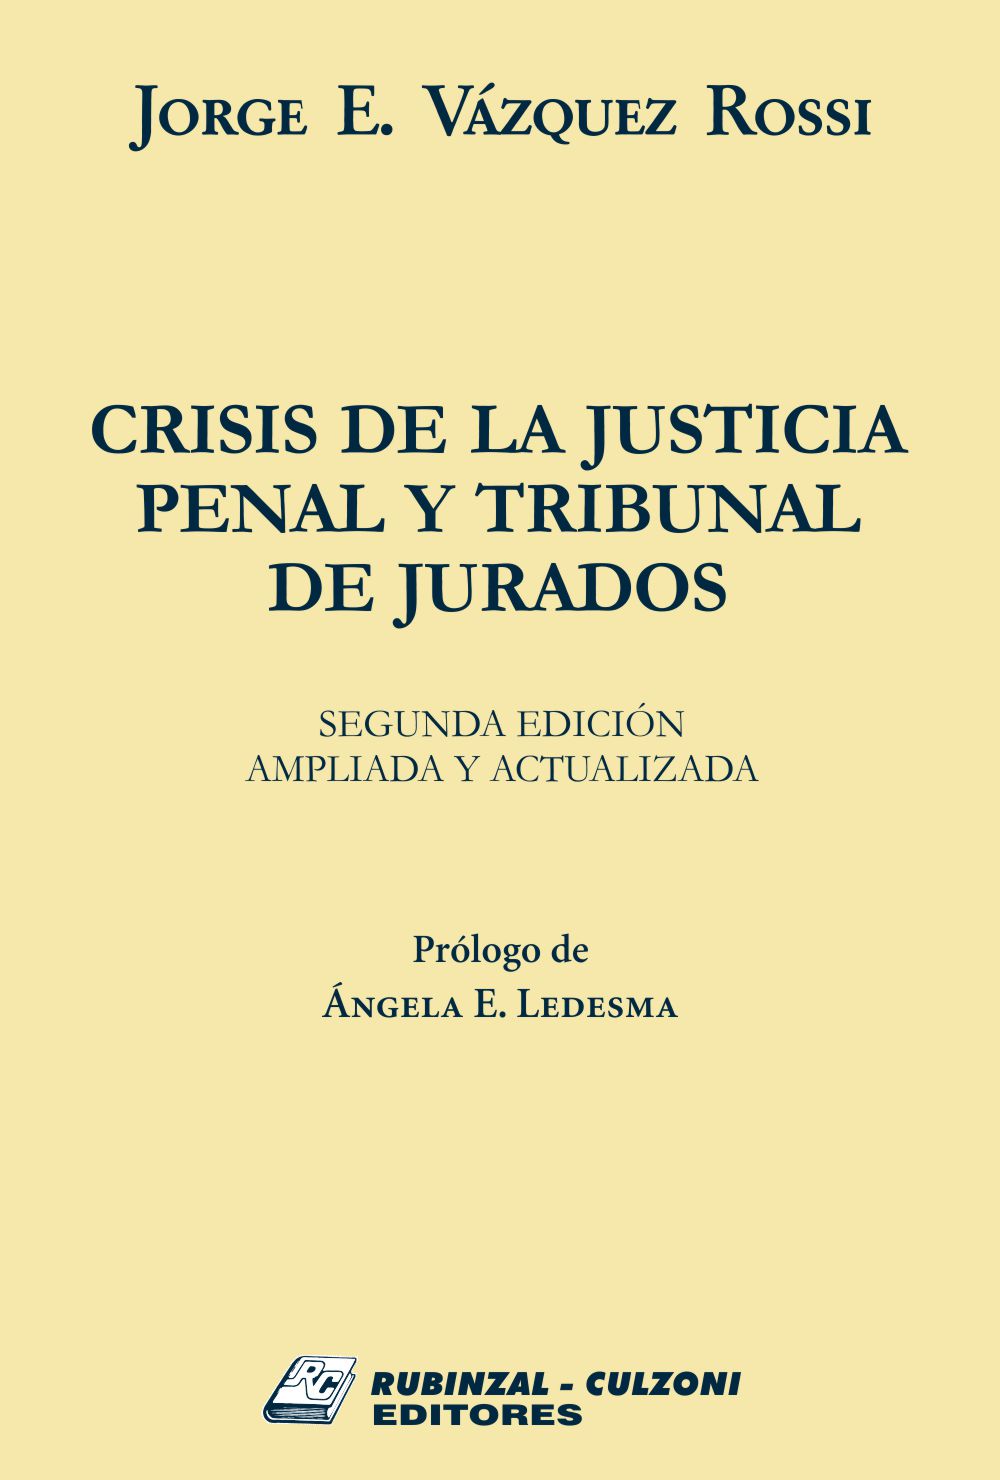 Crisis de la justicia penal y tribunal de jurados